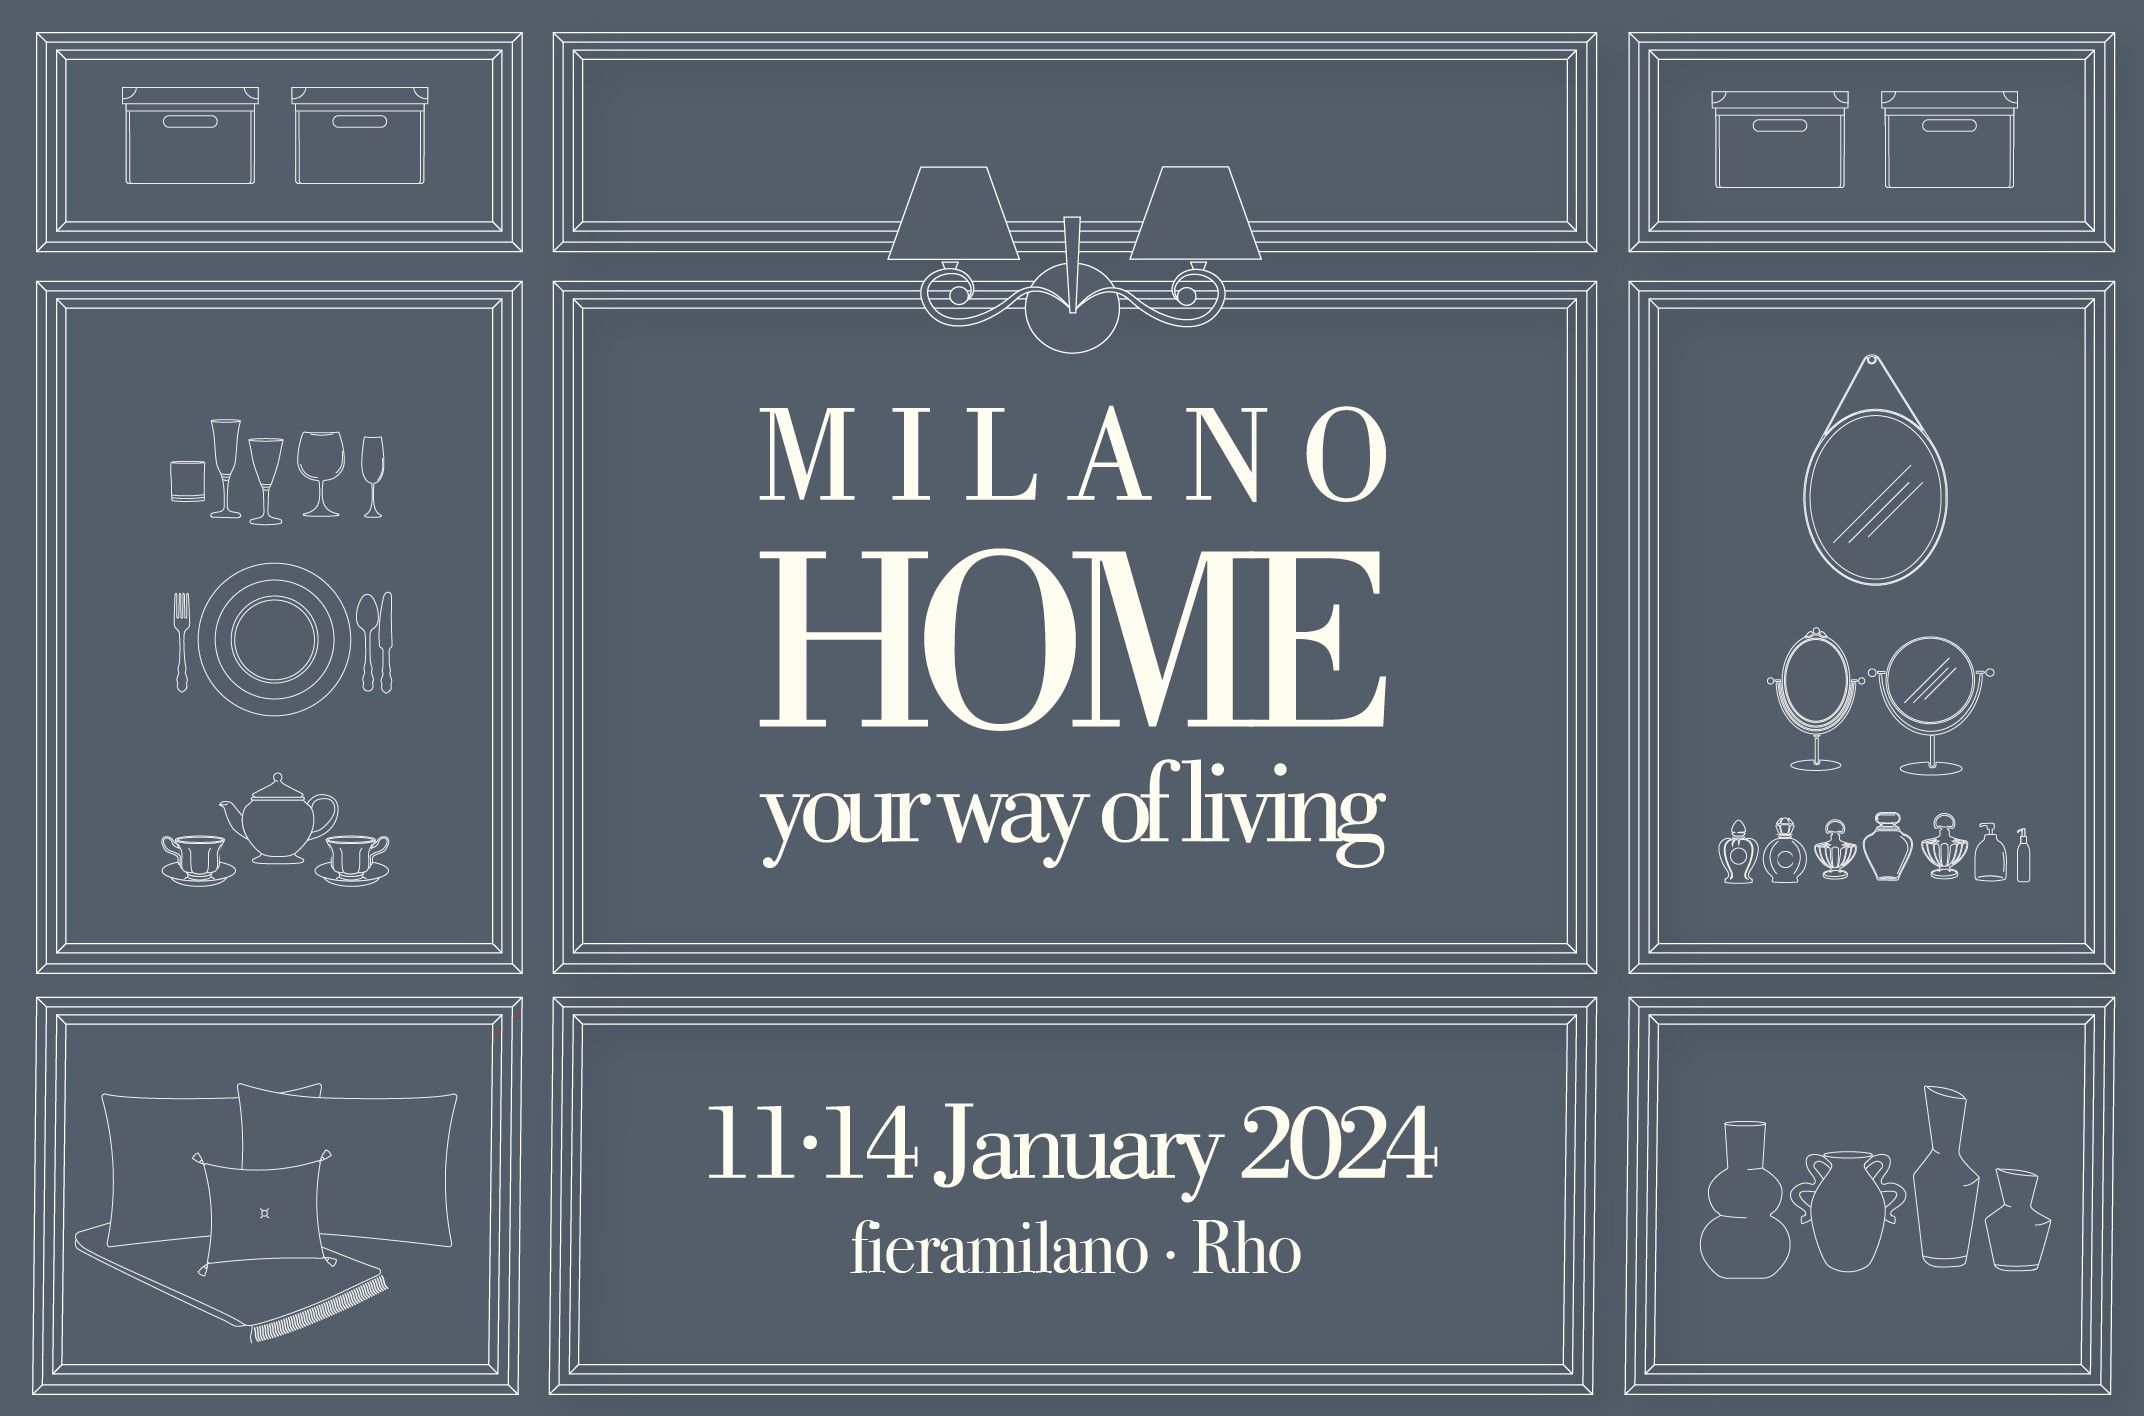 Milano Home 2024, c'est demain ! 